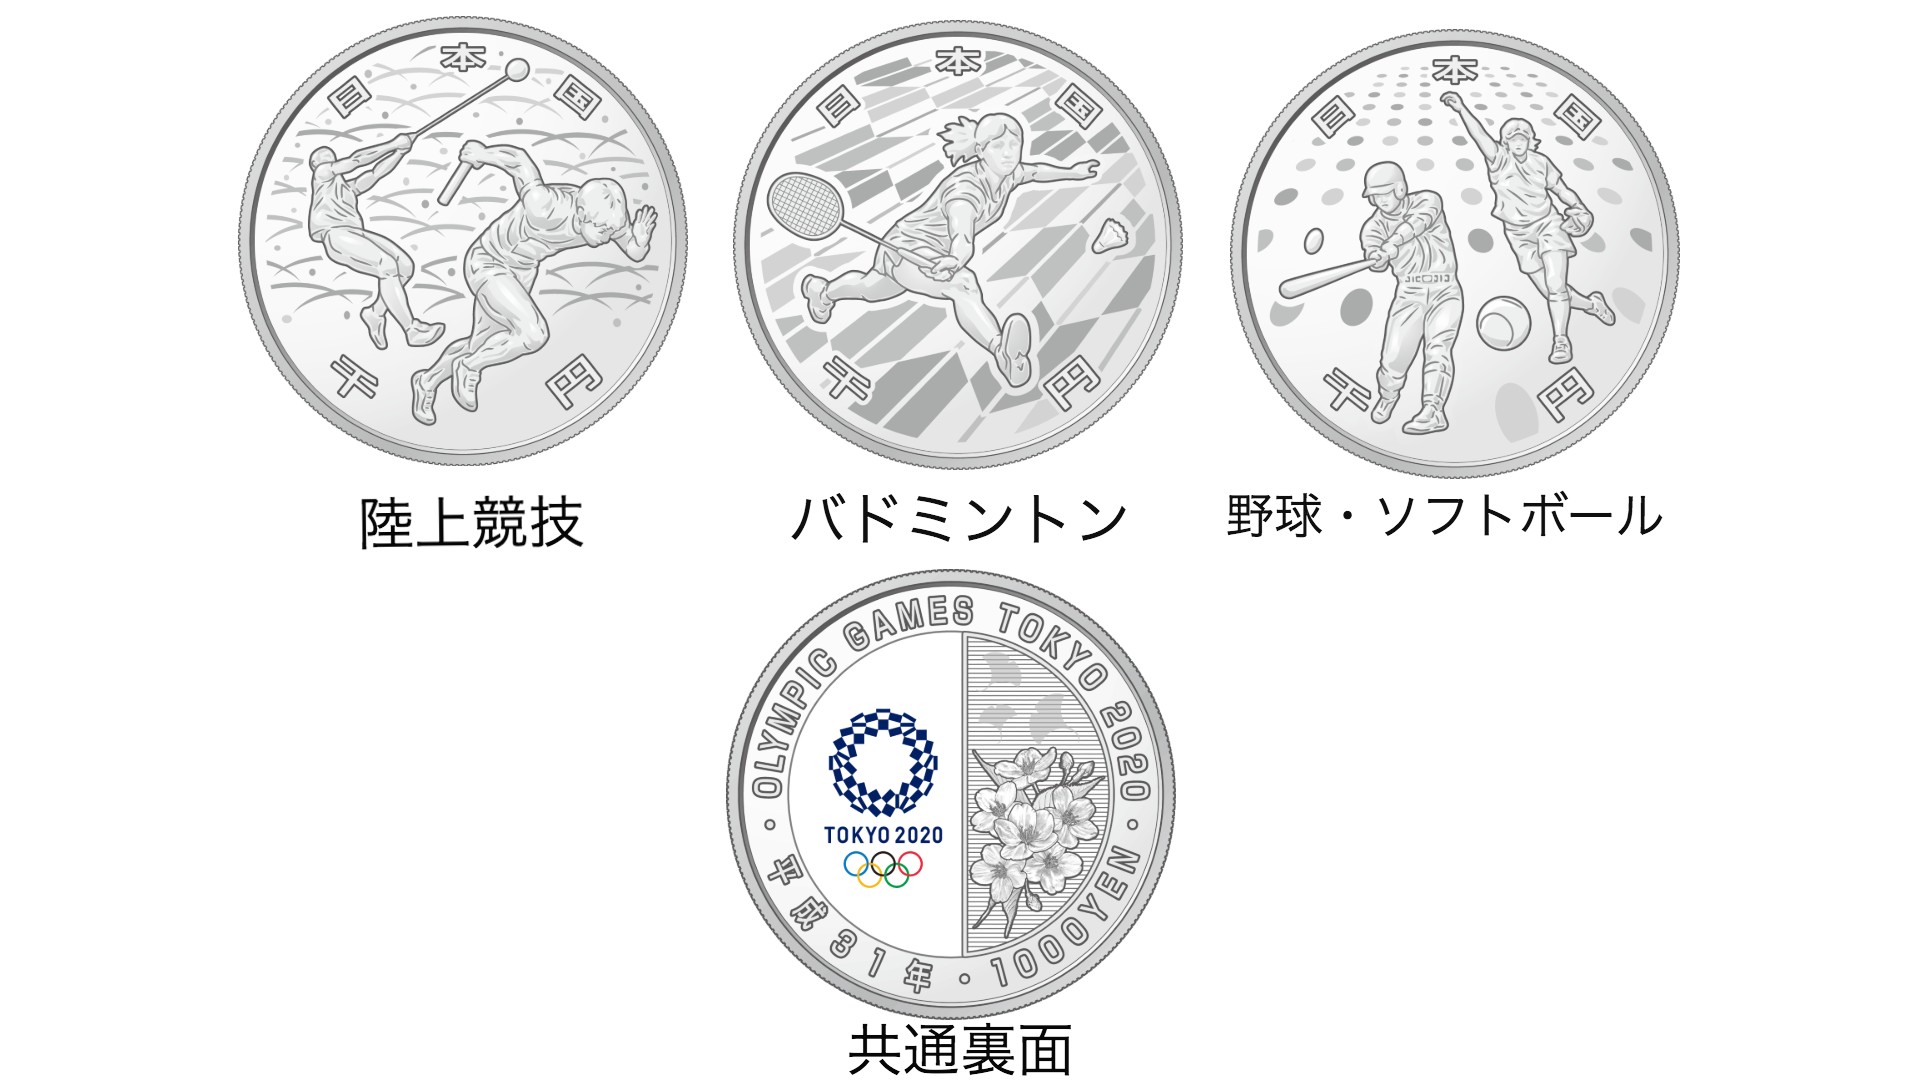 東京オリンピックとパラリンピックの記念貨幣が登場するよ！ 競技種目 